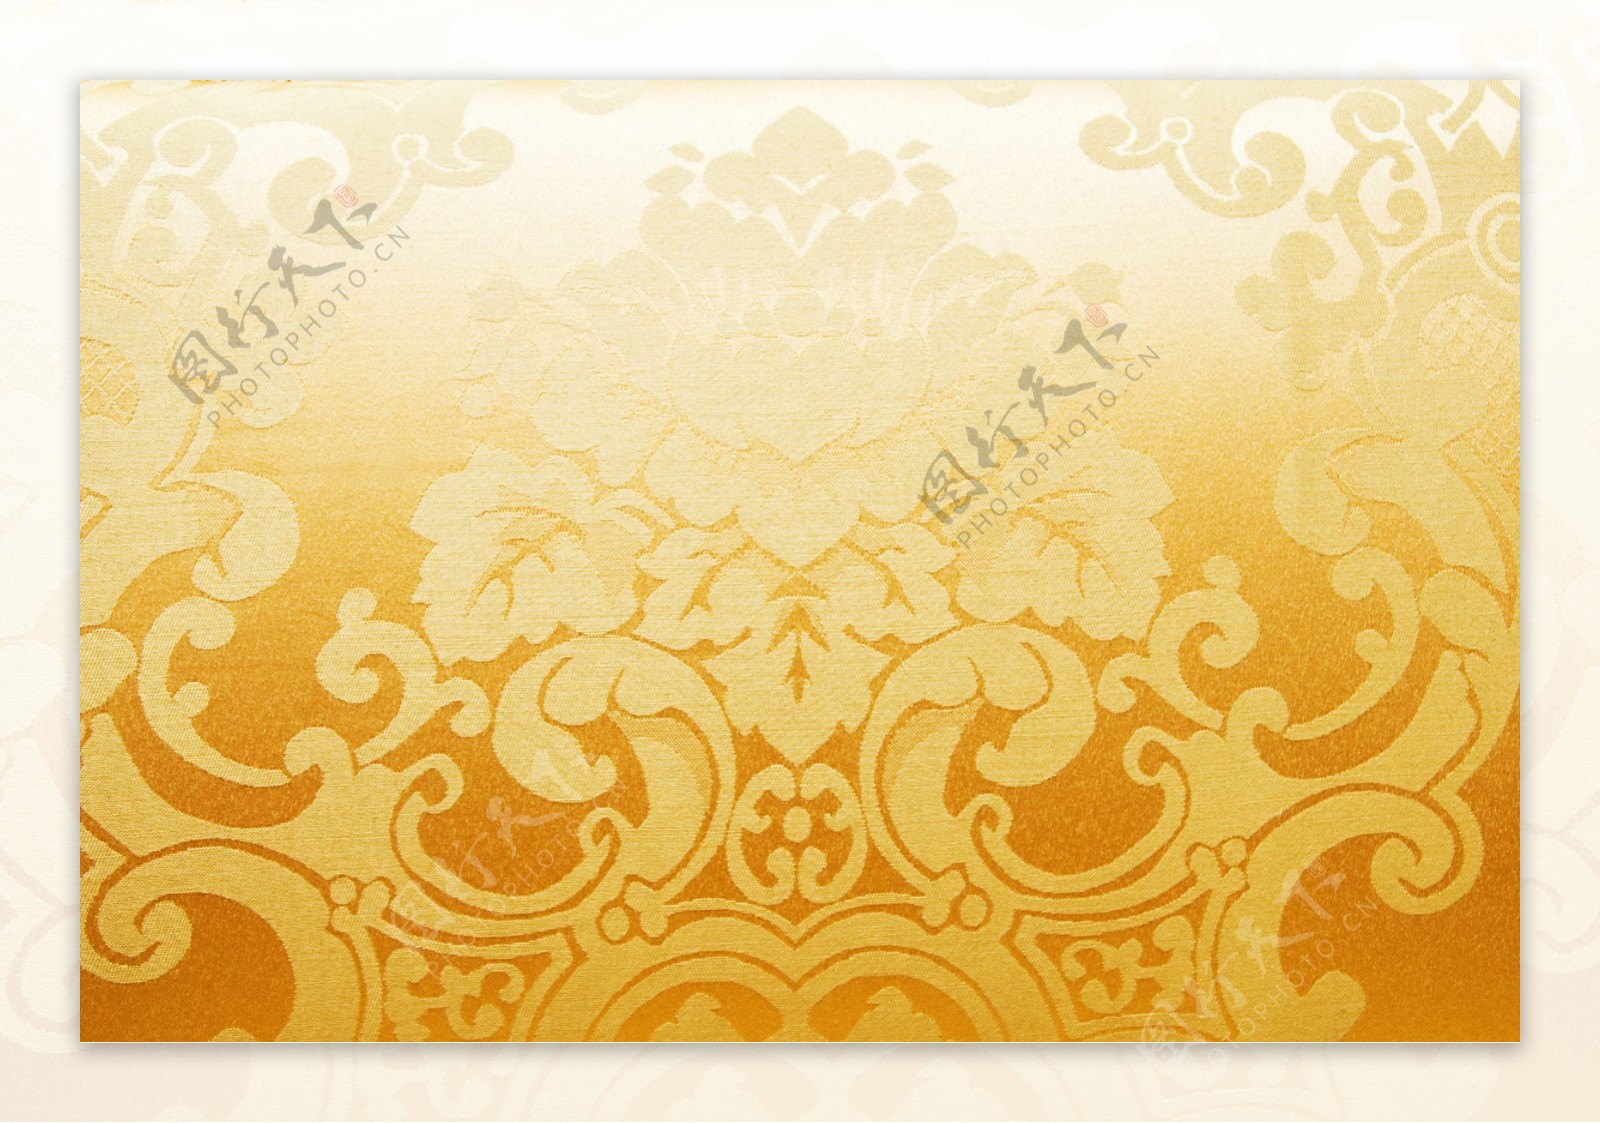 金色欧式花布高清图片3